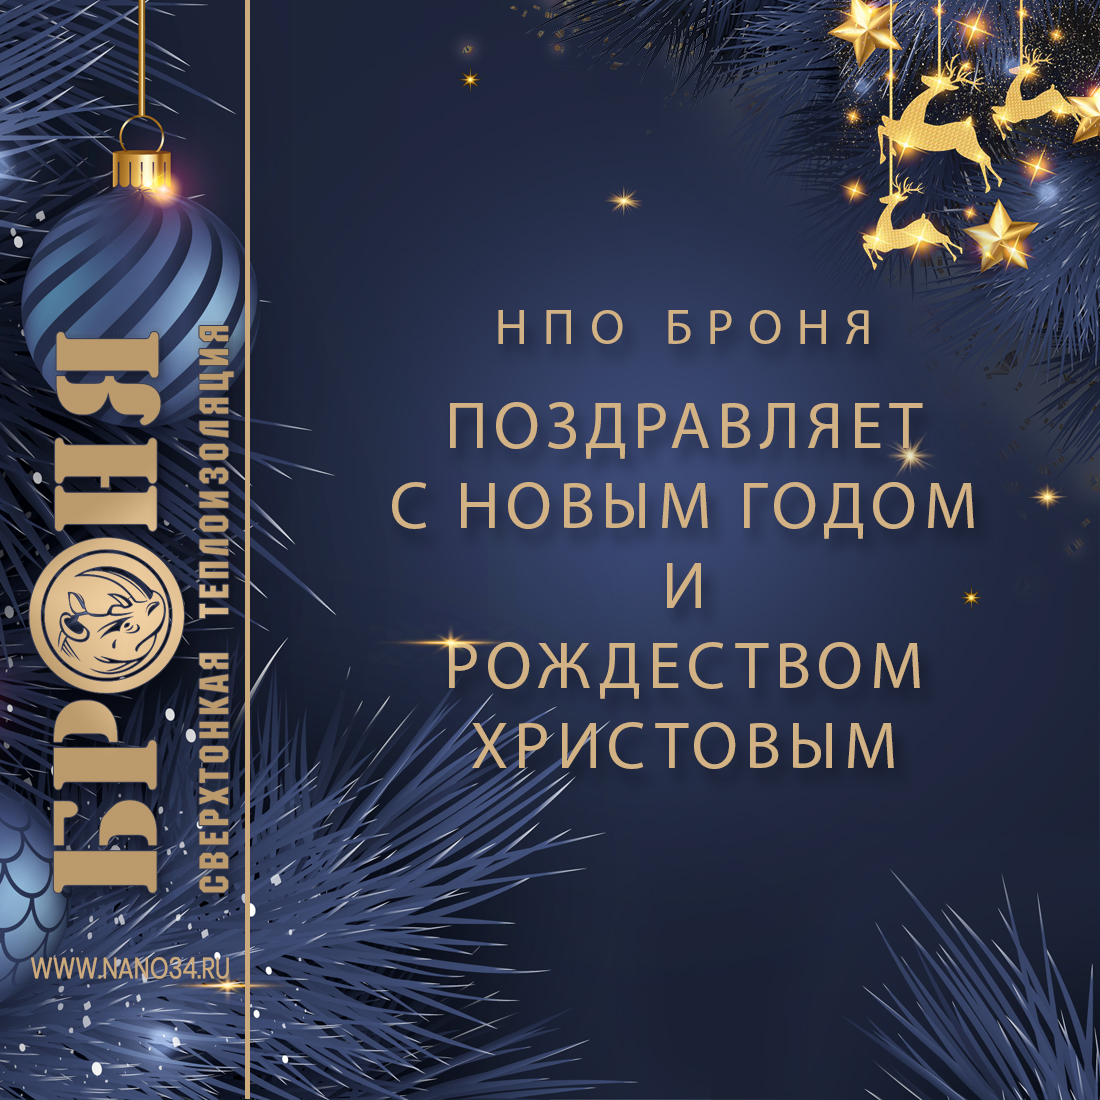 Компания НПО Броня поздравляет С новым годом и Рождеством Христовым!